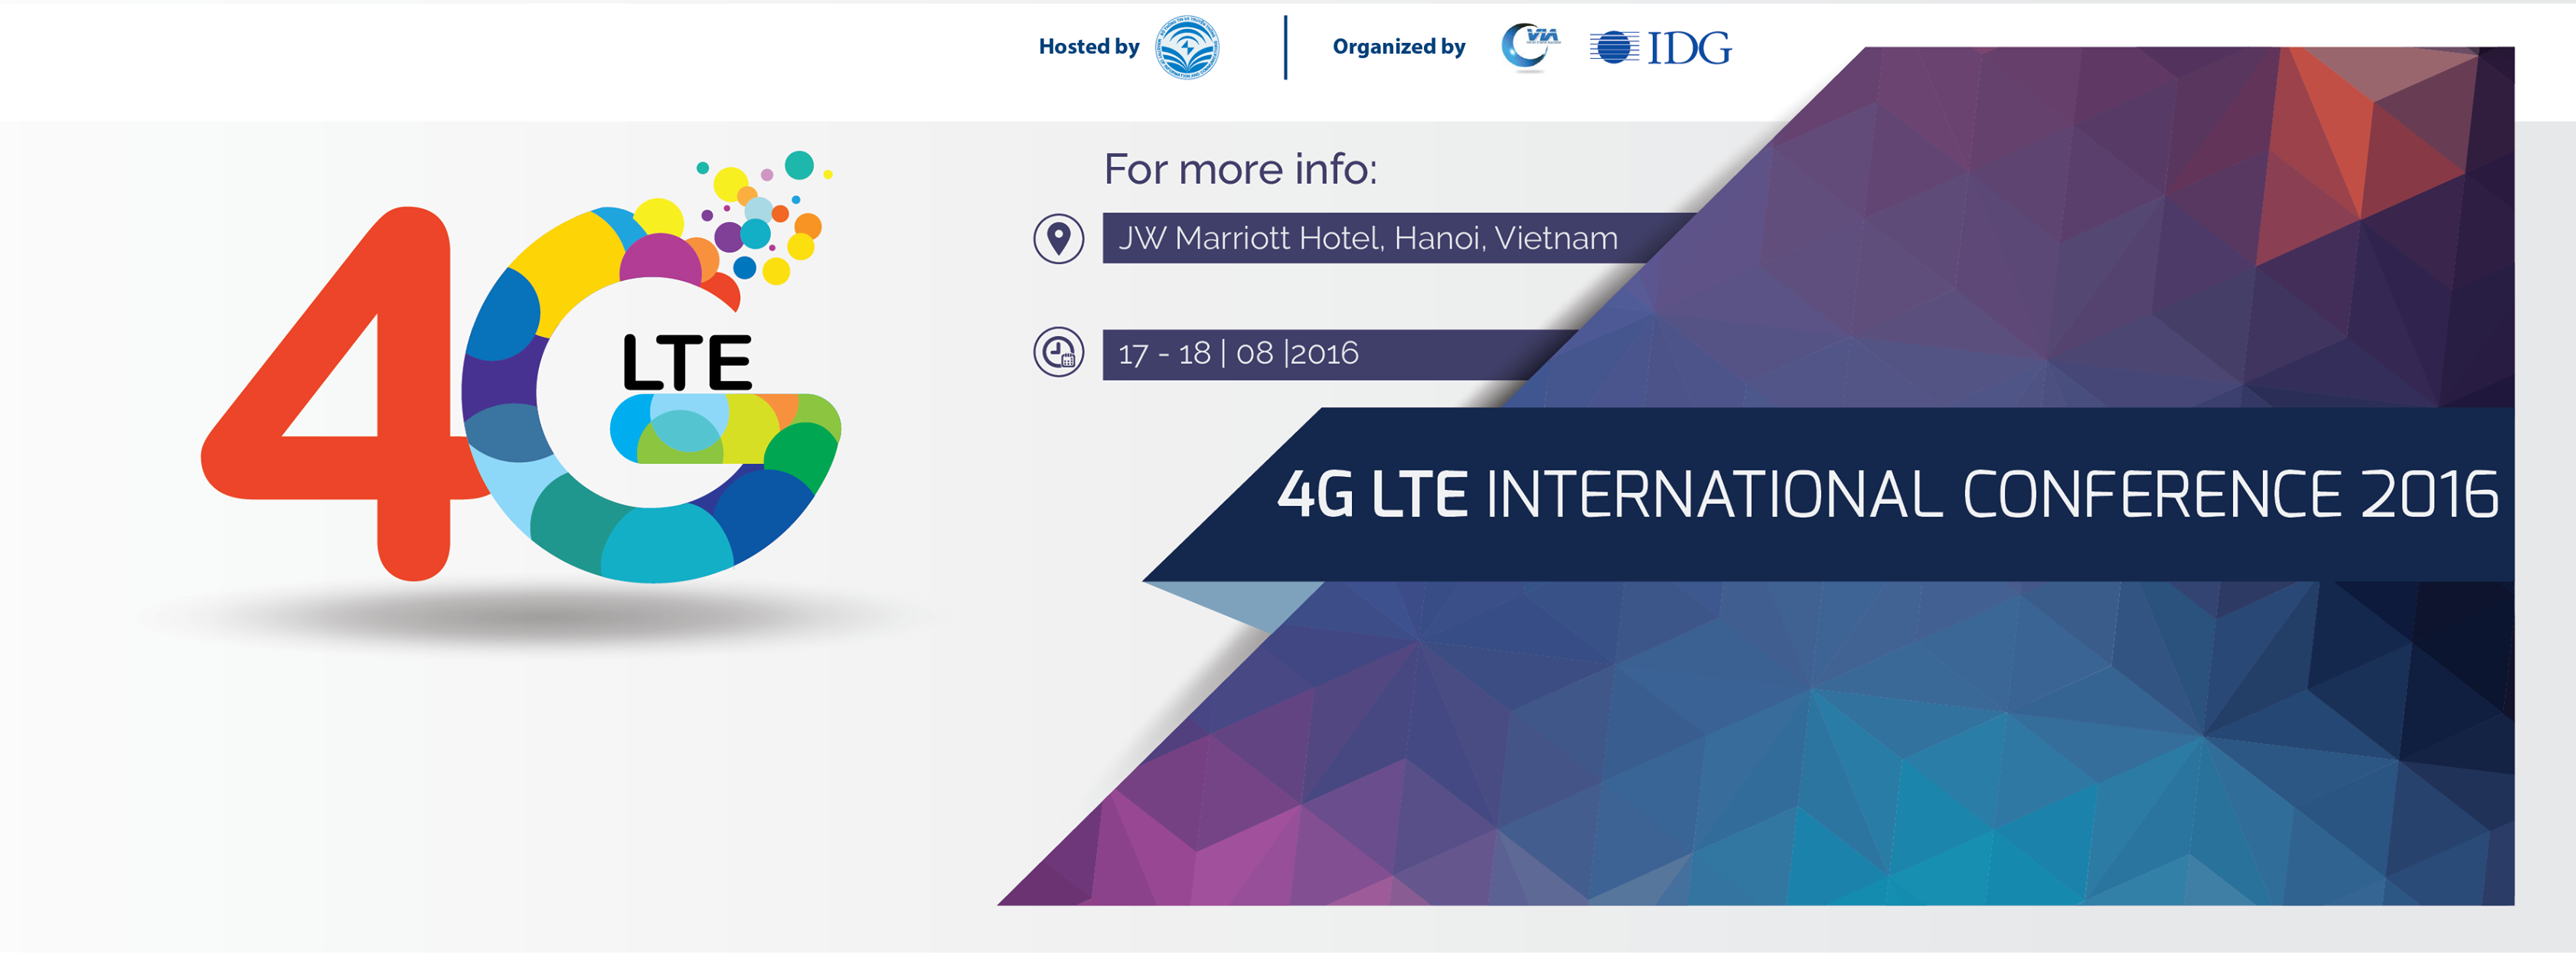 Hội thảo Quốc tế 4G LTE 2016 hướng tới kỷ nguyên Internet kết nối vạn vật